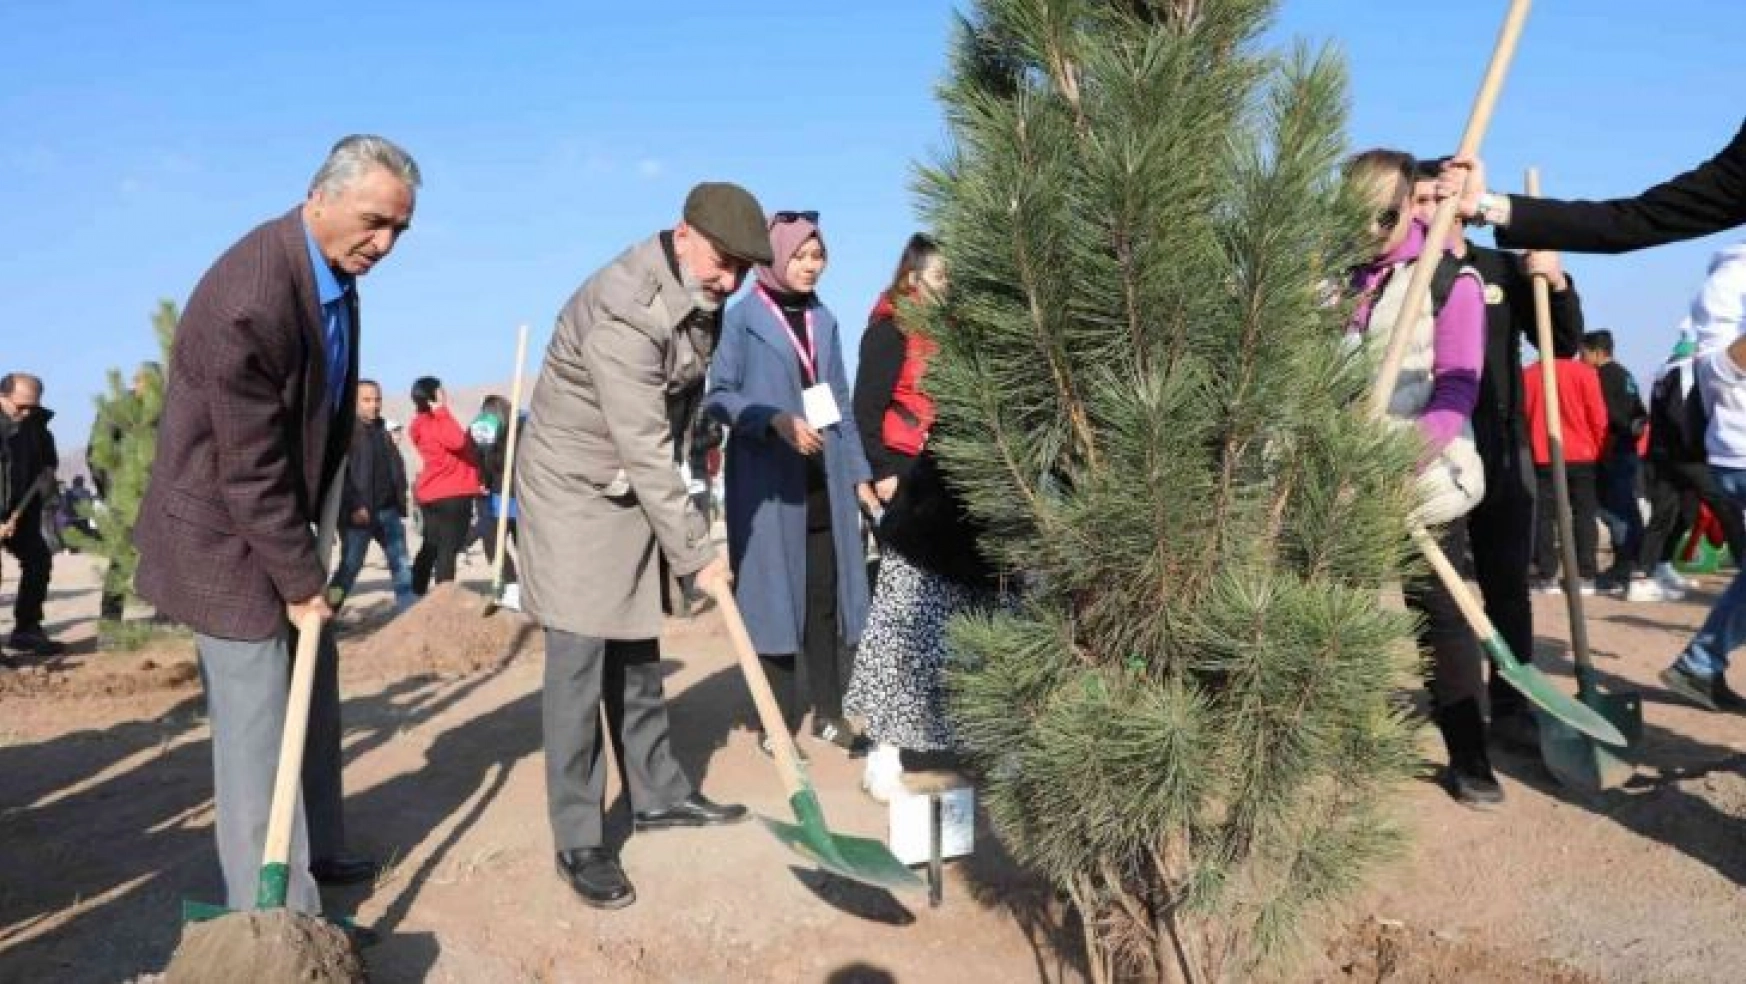 Kayseri'nin Denizi Kuşçu'da, ağaç dikme etkinliği gerçekleştirildi